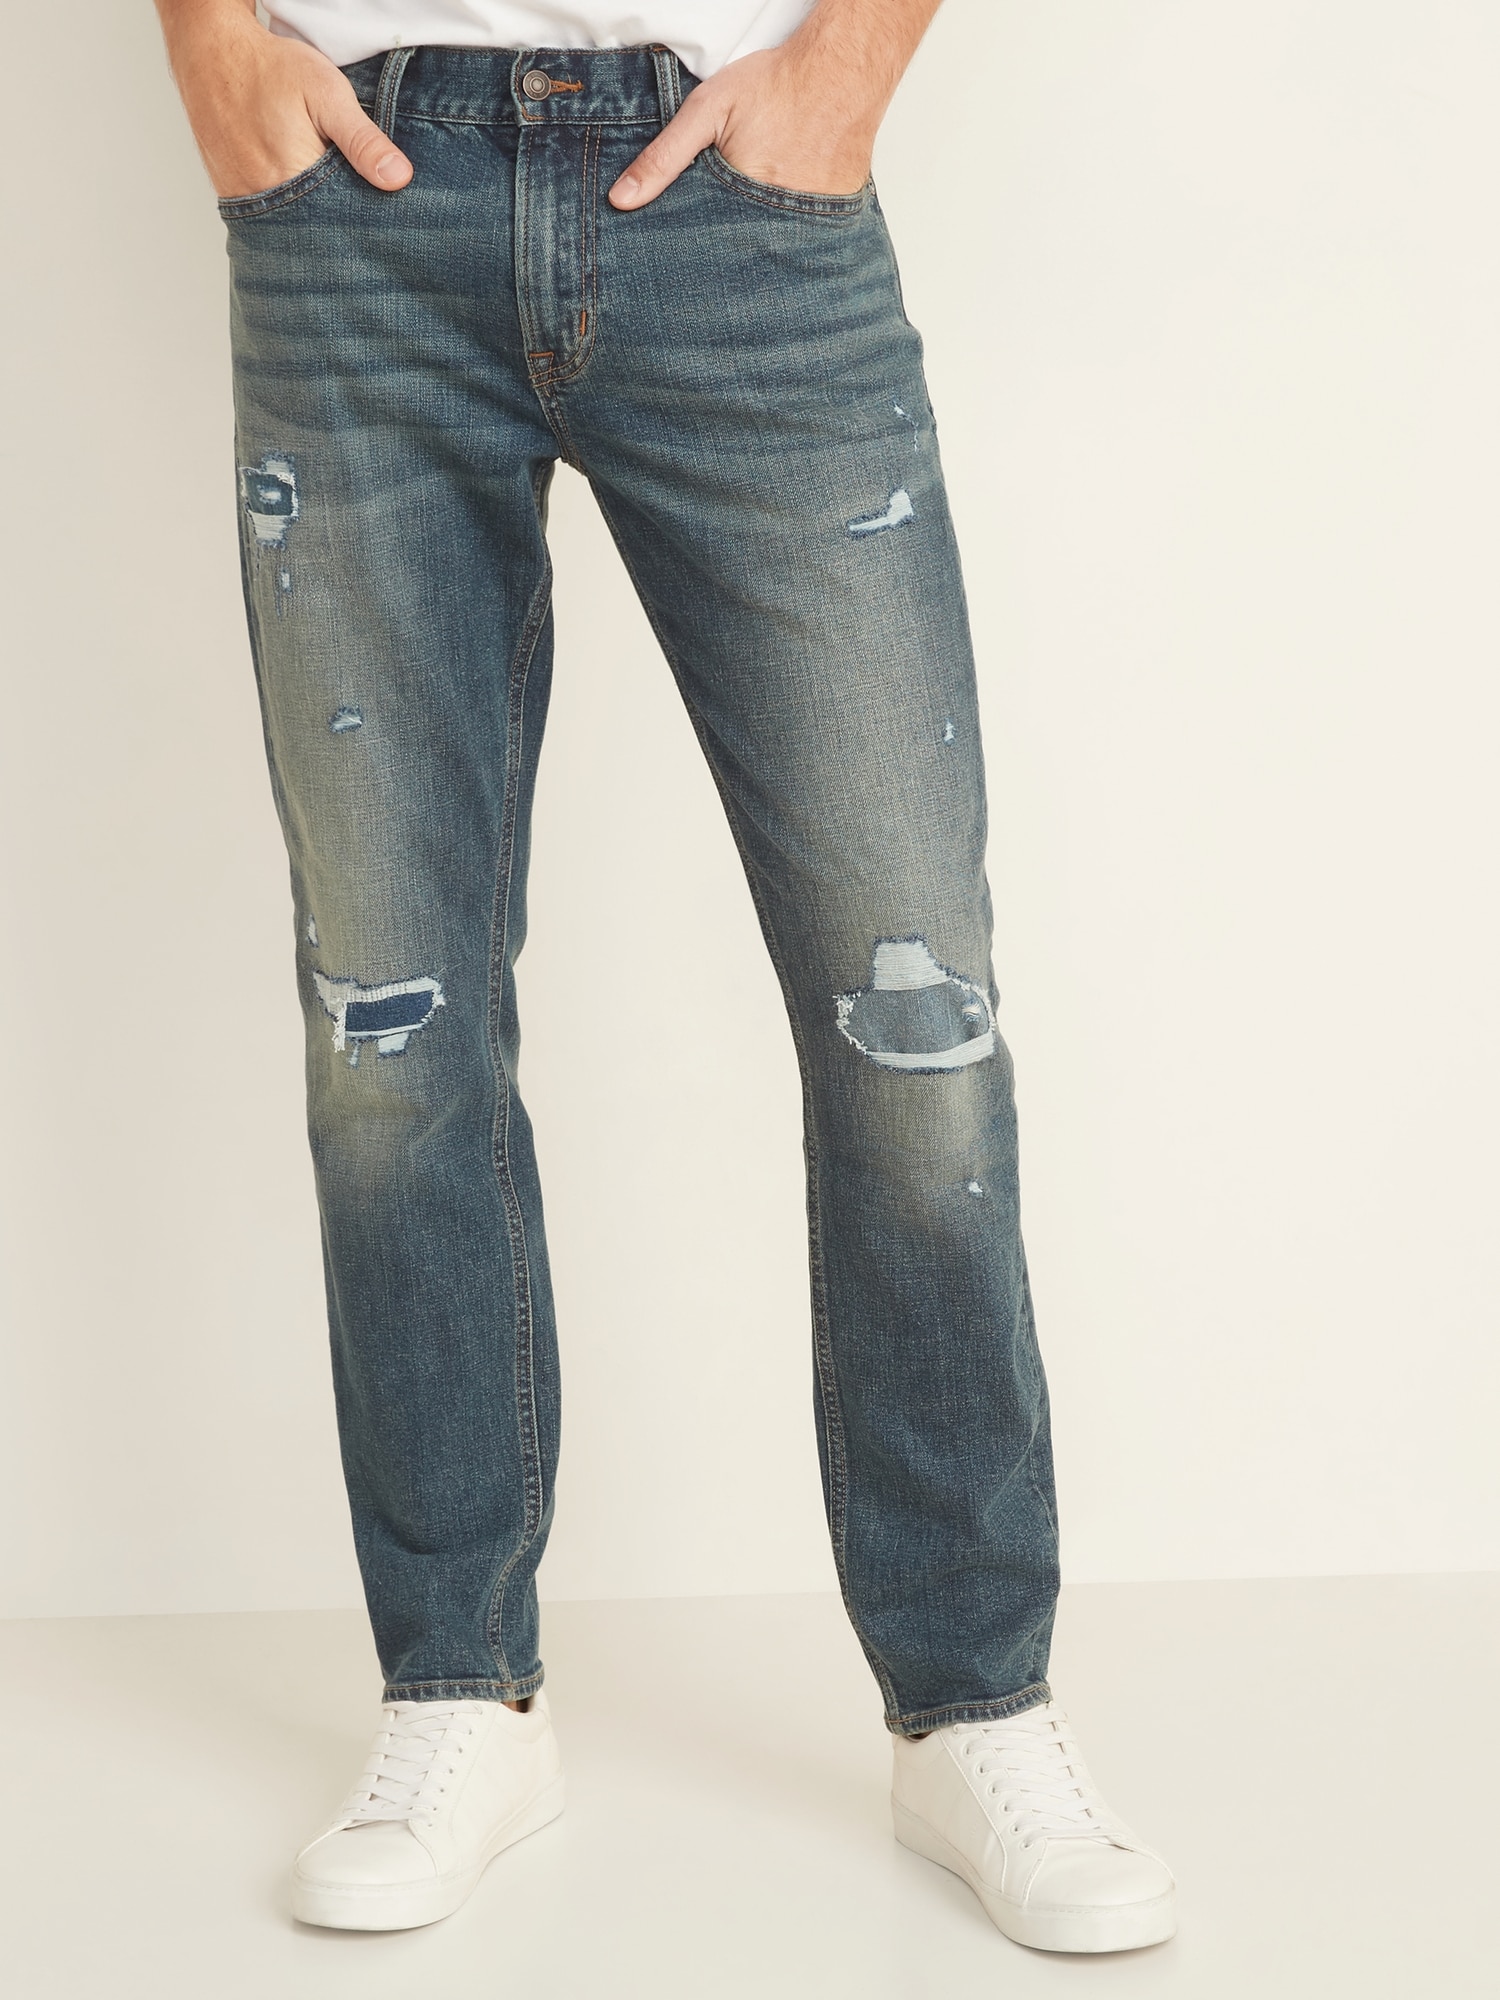 old navy jeans mens slim